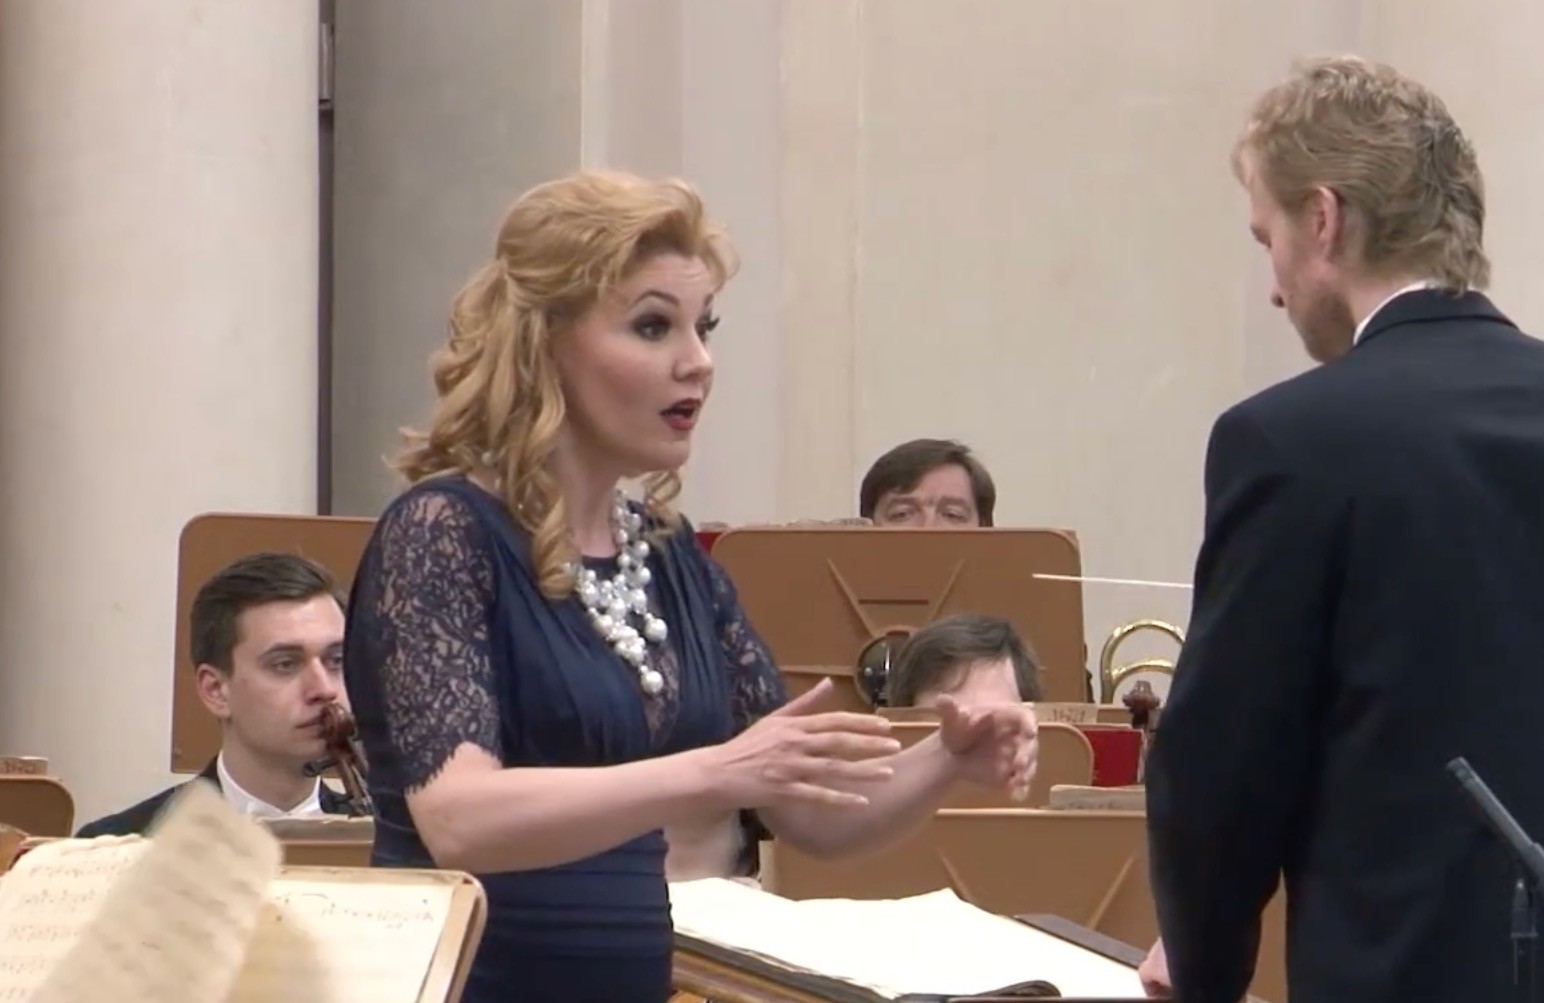 Die Sopranistin Oxana Shilova singt die Traum-Arie aus "Die Zarenbraut" von Rimski-Korsakow, eine Aufnahme aus dem Grossen Saal der St. Petersburger Philharmonie im Jahr 2016 (Bild: YouTube)